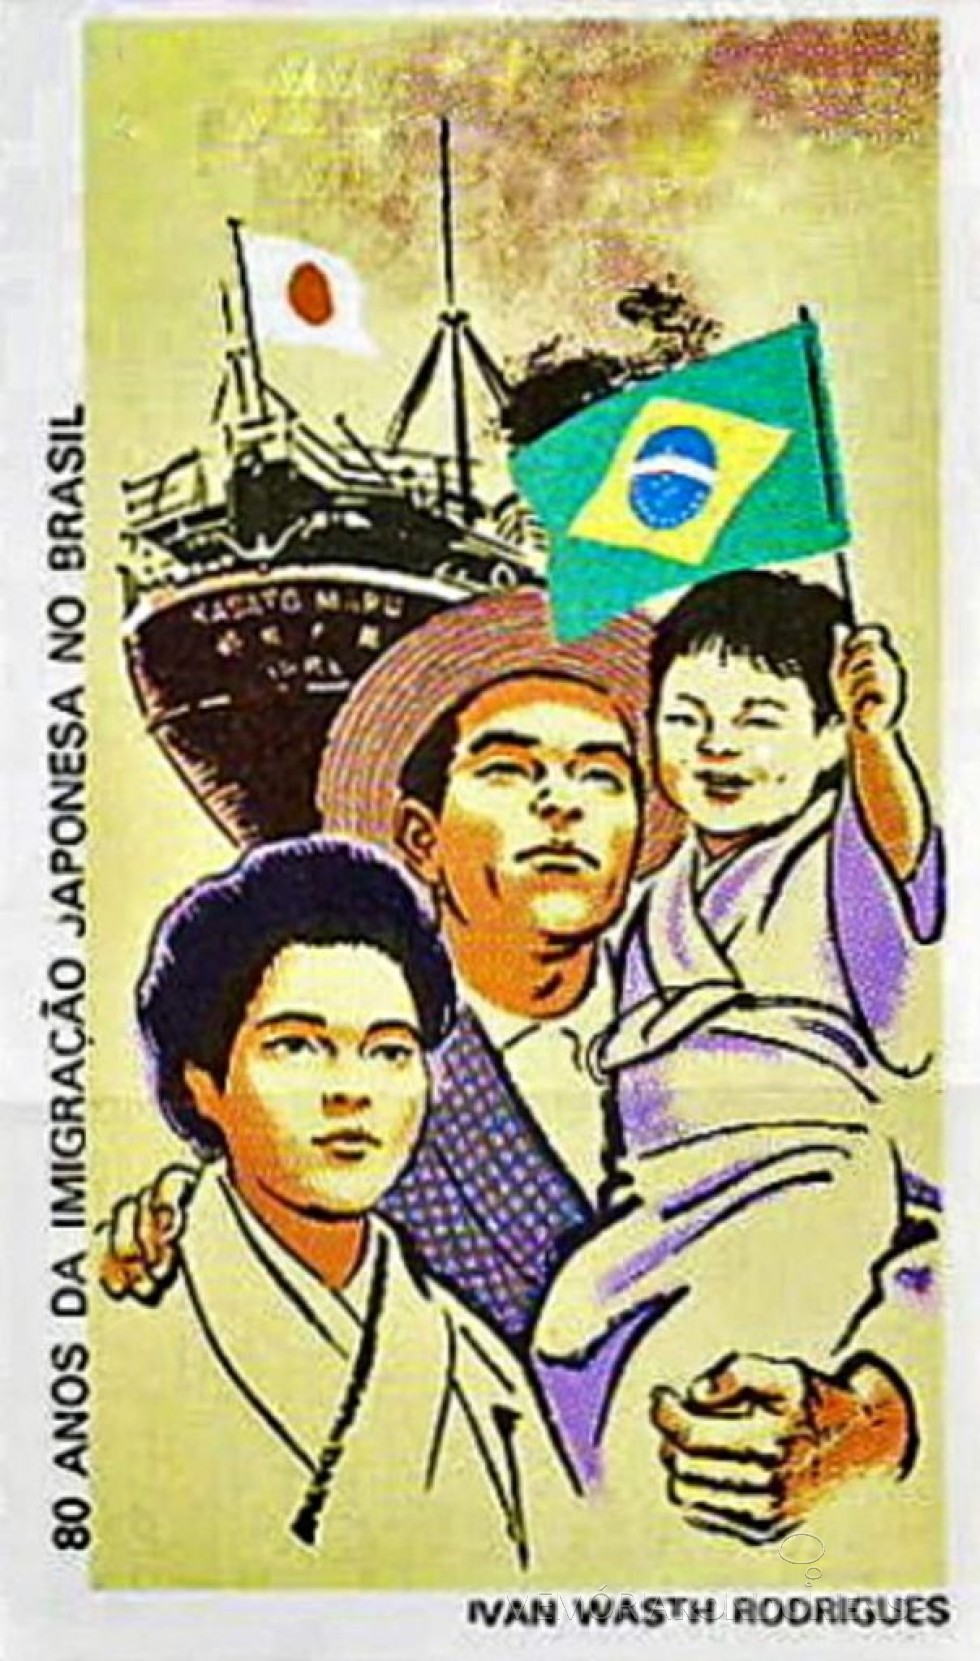 || Cartaz alusivo ao 80º Aniversário da Imigração Japonesa no Brasil.
Imagem: Acervo O Passado do Brasil/Facebbok - FOTO 5 - 